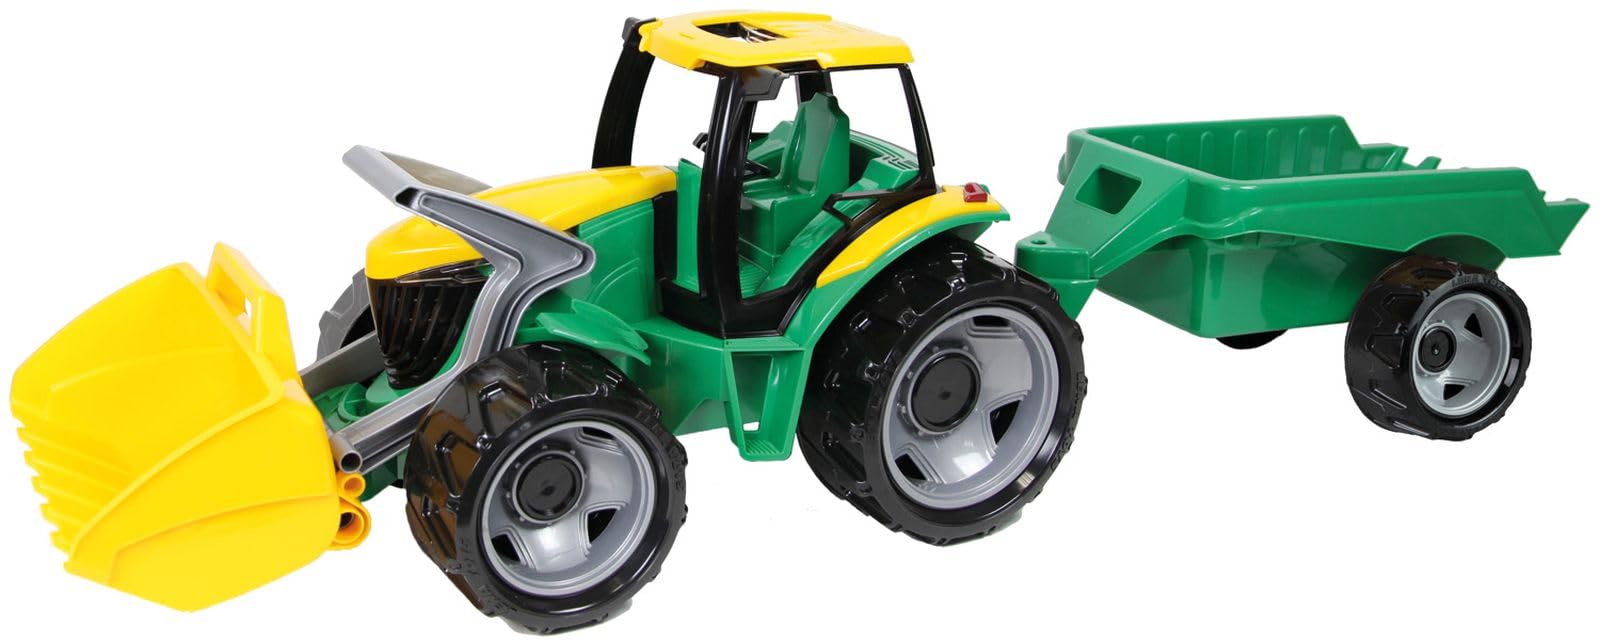 Lena 02123 Giga Trucks Traktor mit Schaufel und Anhänger grün, Starke Riesen Spielfahrzeug Trecker mit Ladeschaufel 62 cm und Hänger ca. 43 cm, Spielzeugtraktor Set für Kinder ab 3